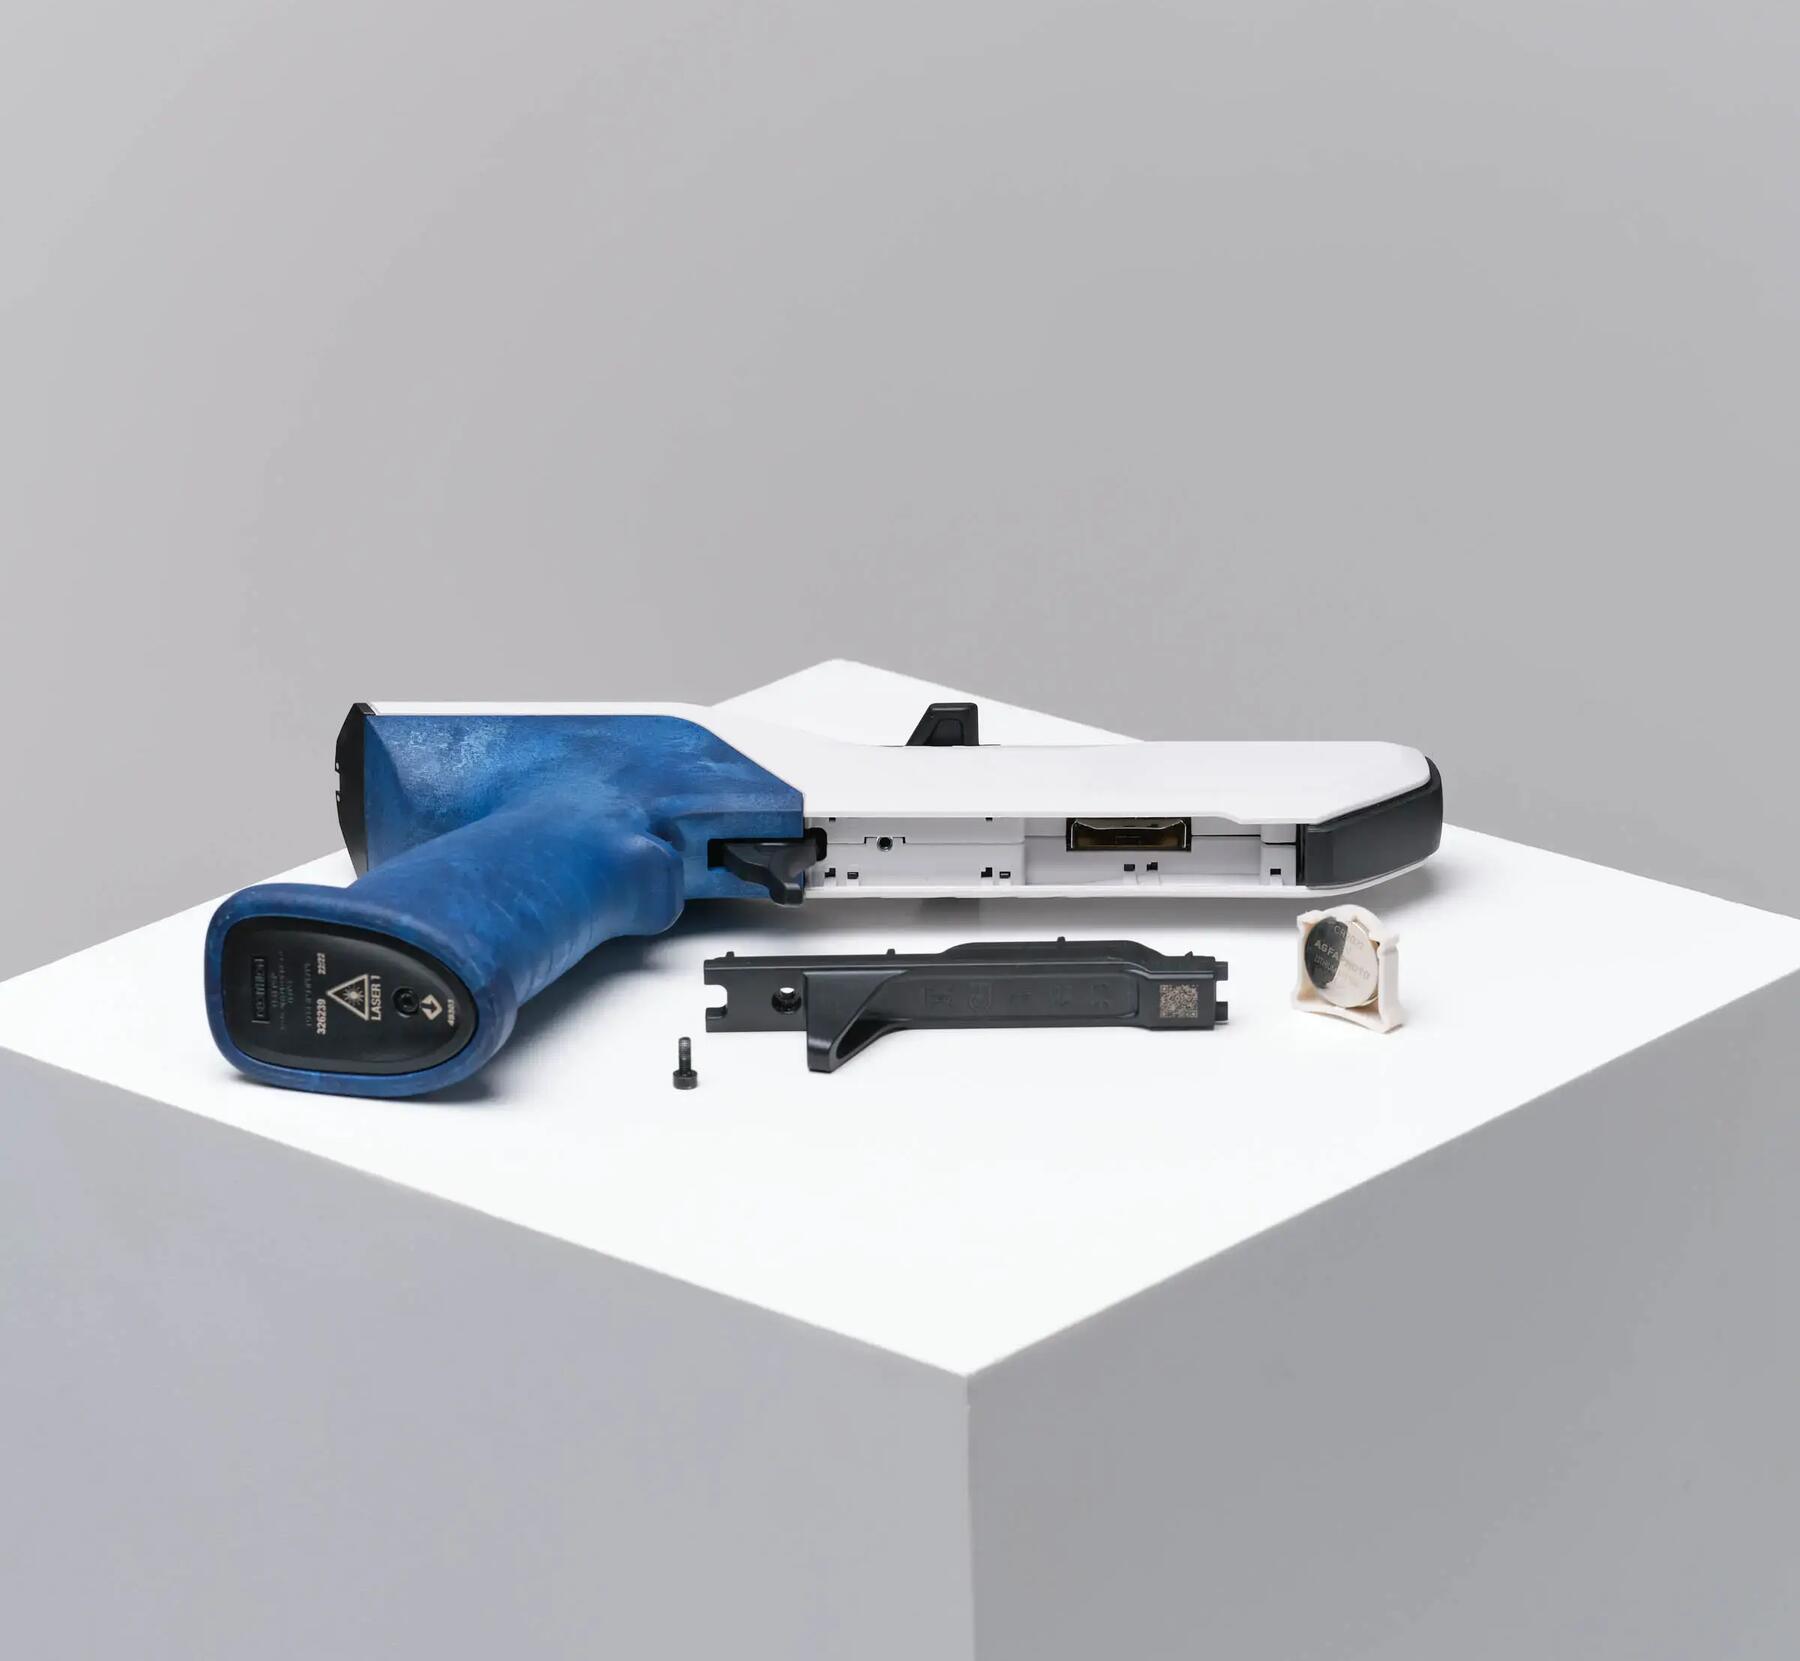 Pistolet laser : choisir un modèle démontable et réparable